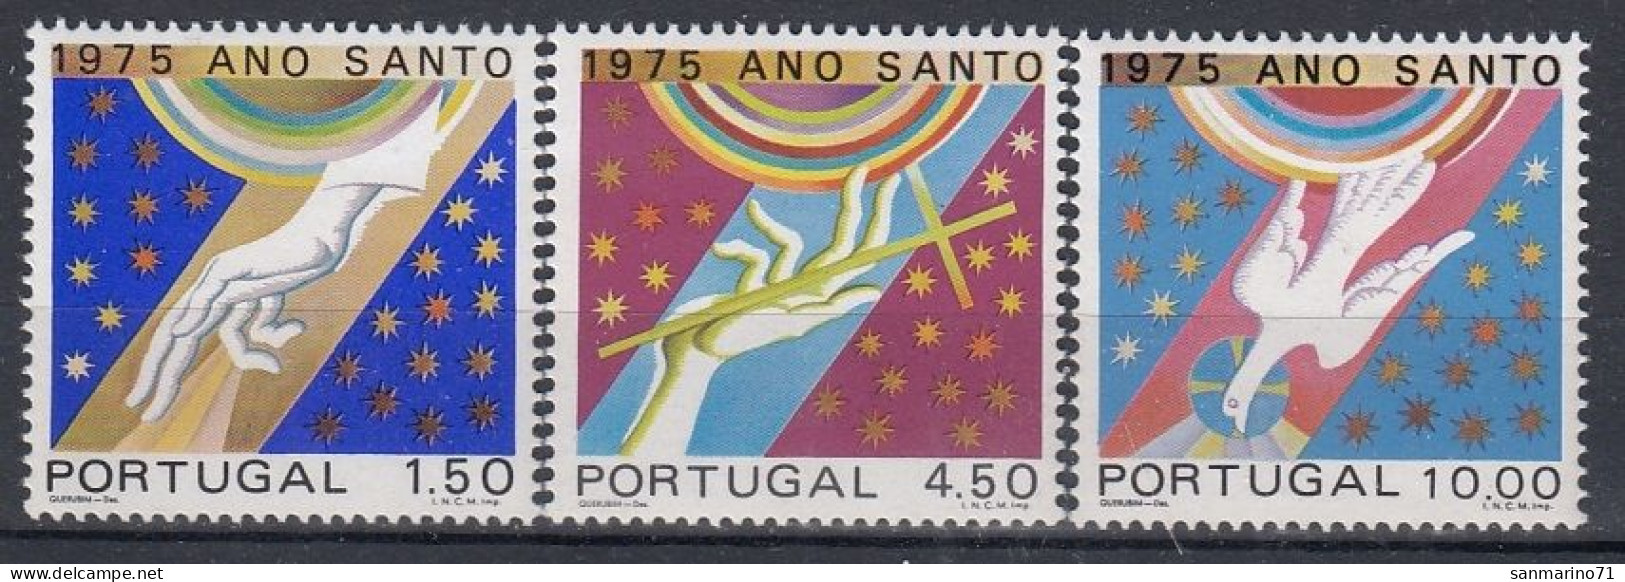 PORTUGAL 1278-1280,unused - Christianity